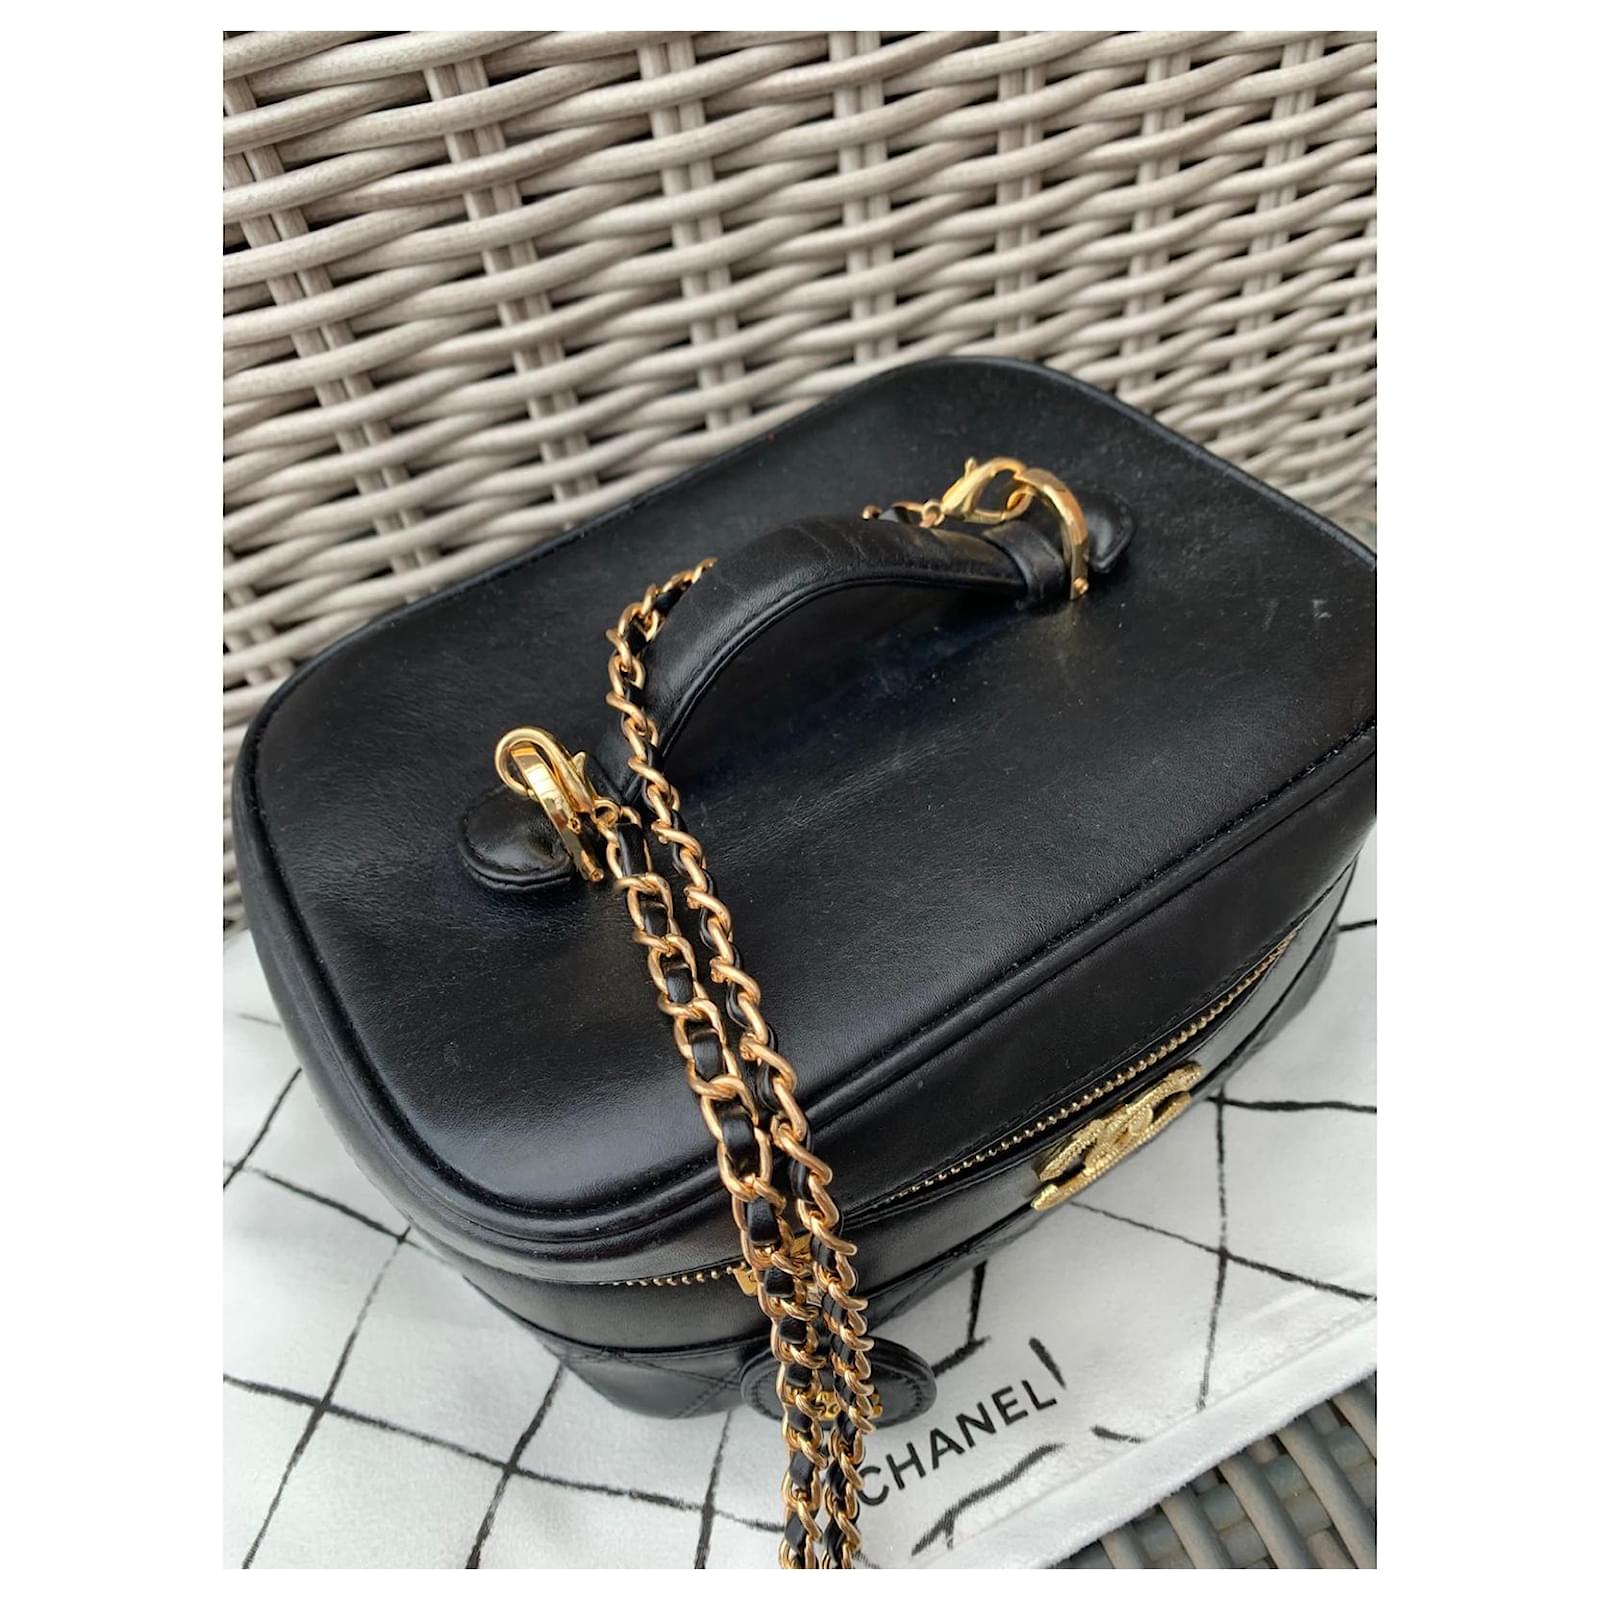 Handbags Chanel Vanity Case